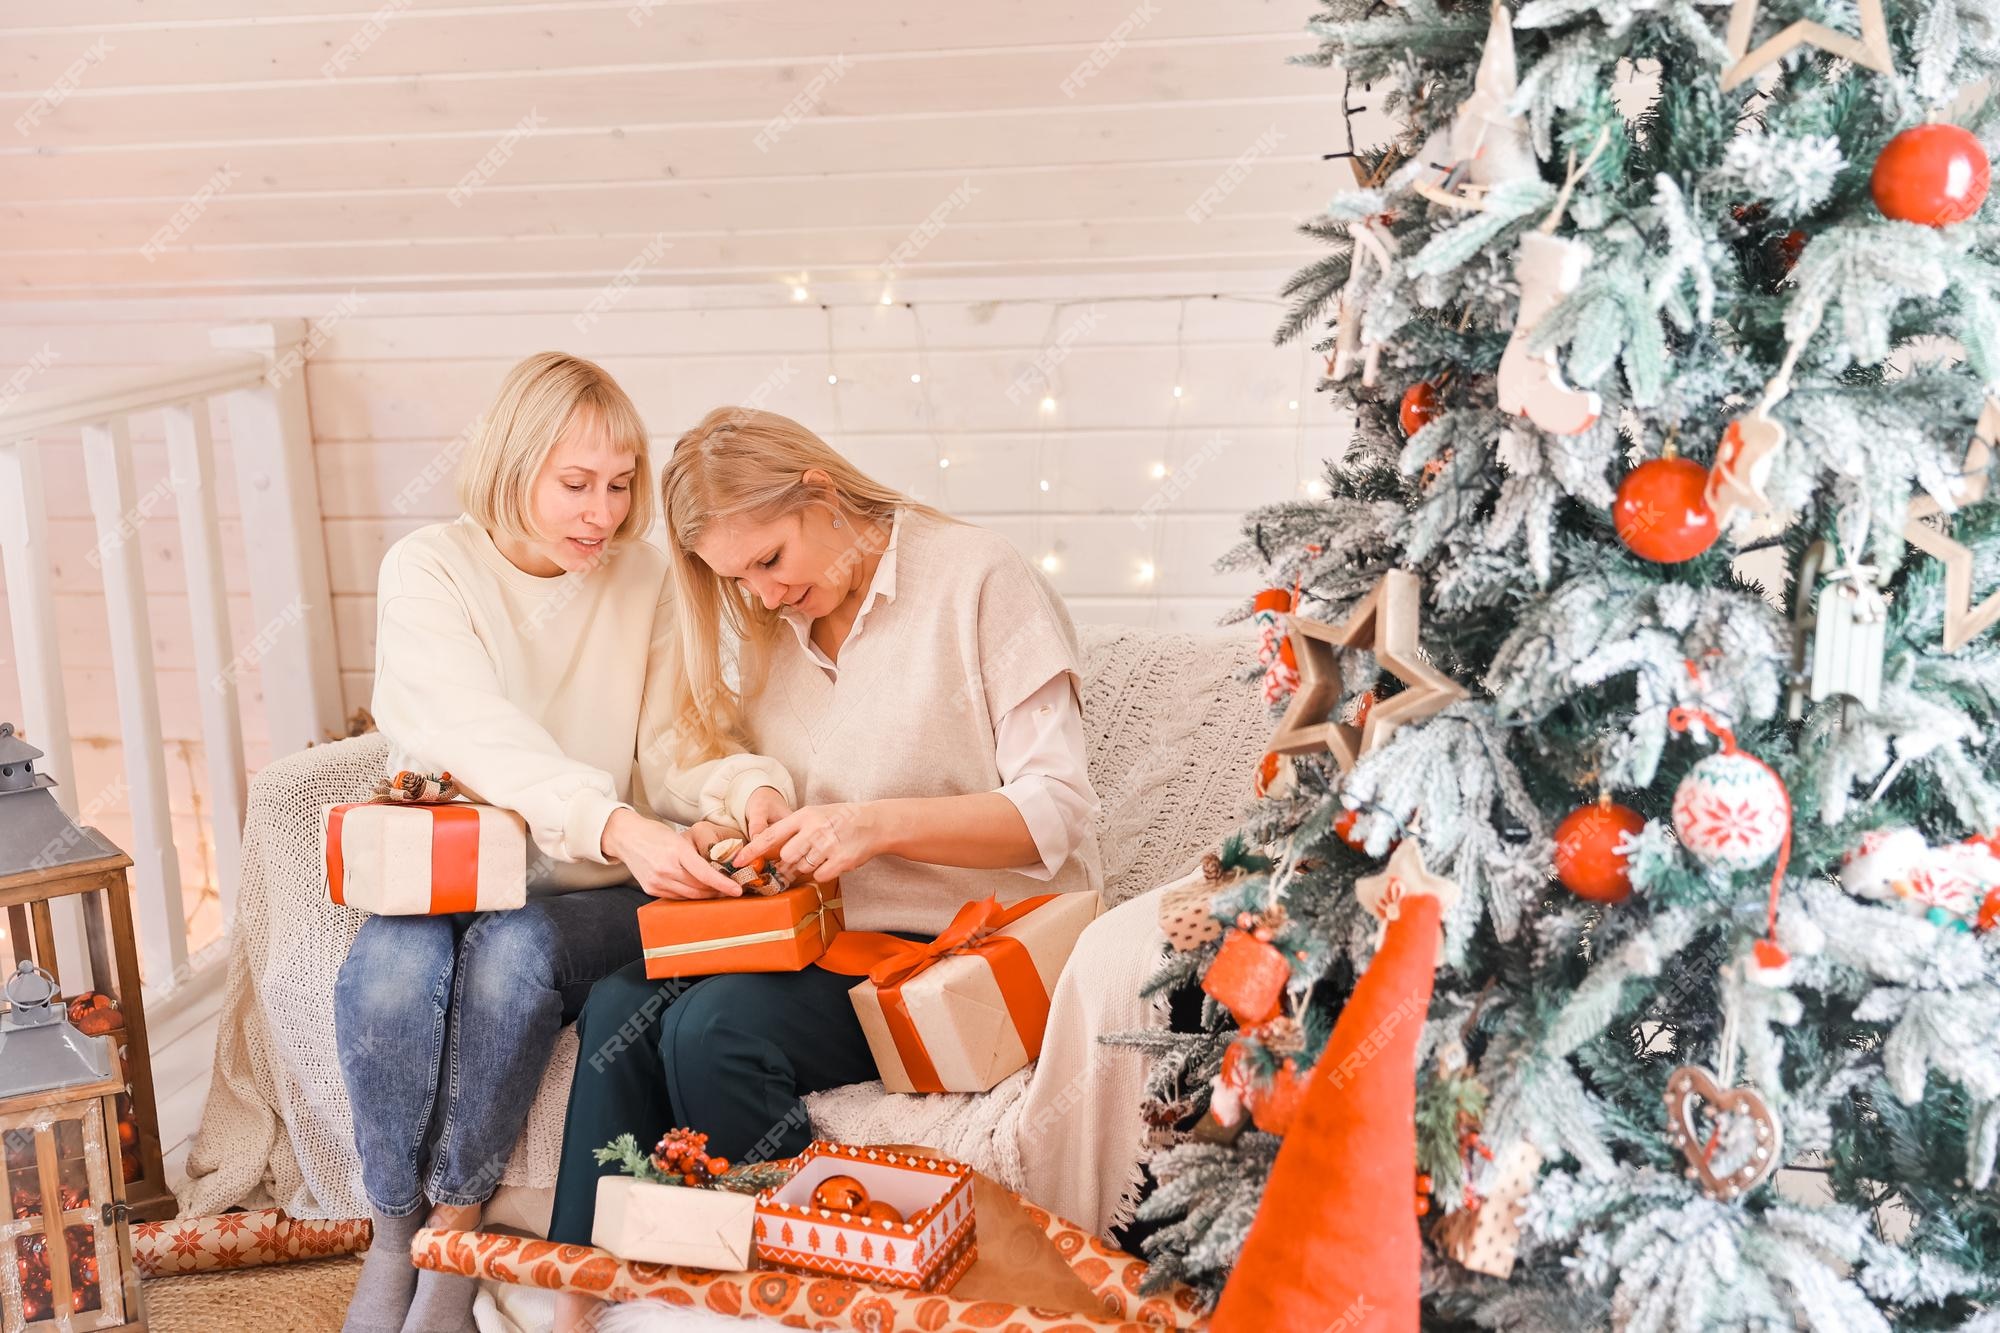 Las madres de las mujeres se están preparando para la navidad, los regalos del paquete de año en casa mientras están cerca del árbol de navidad. vacaciones de invierno,